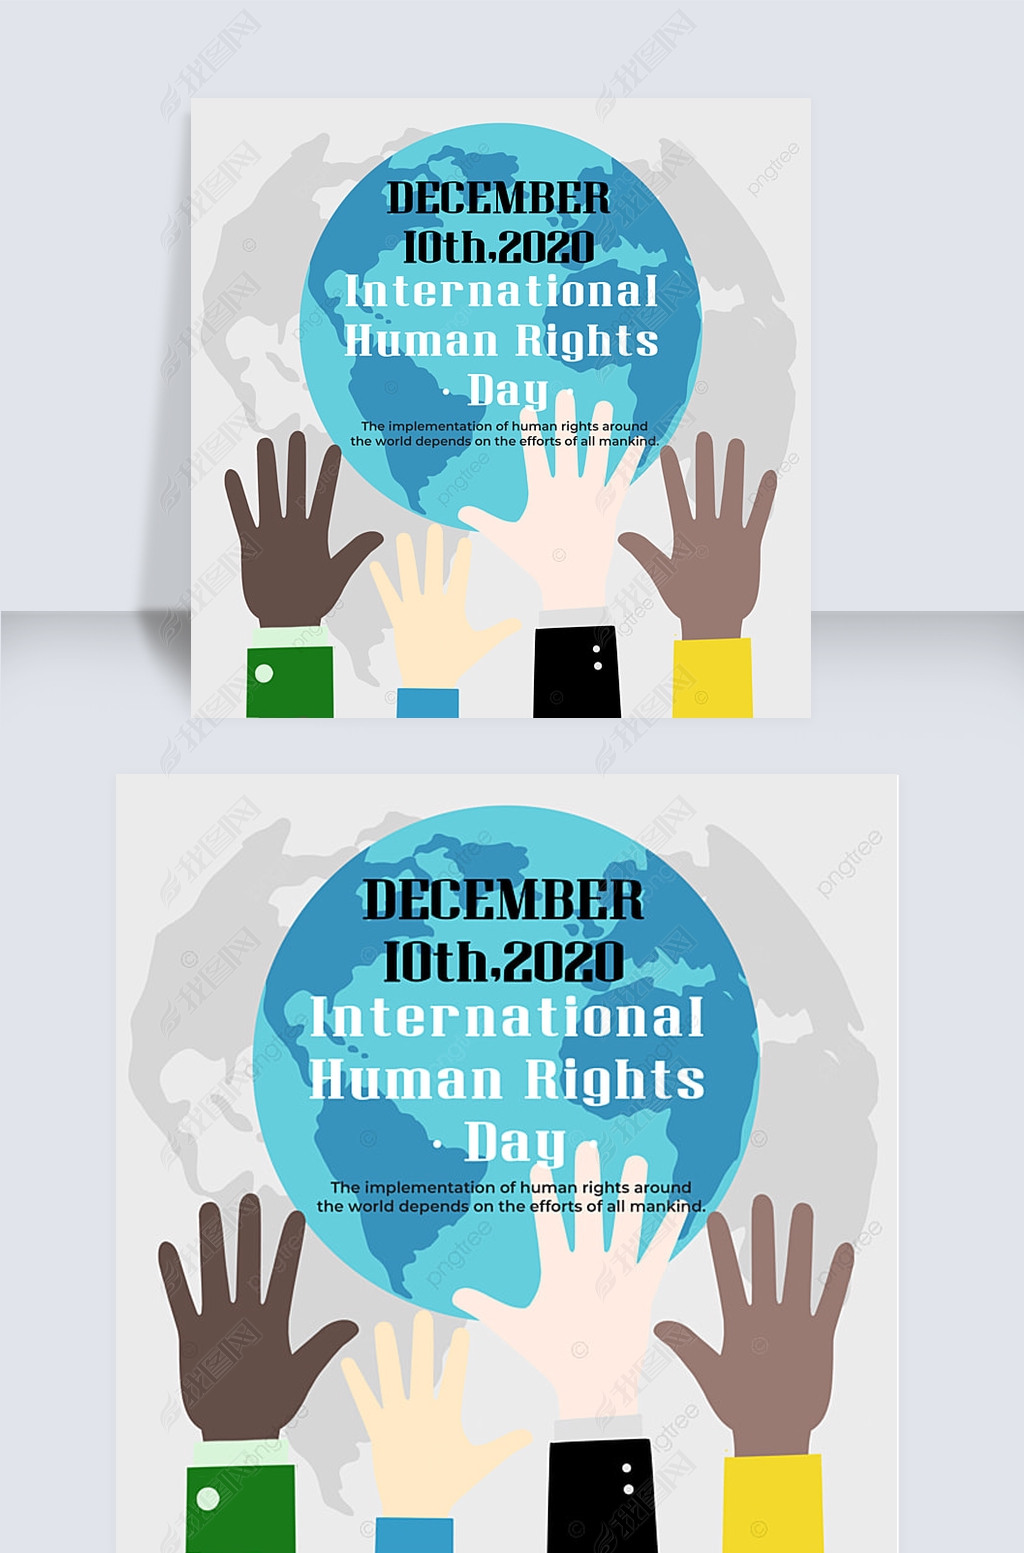 ǳɫsnsinternational human rights day